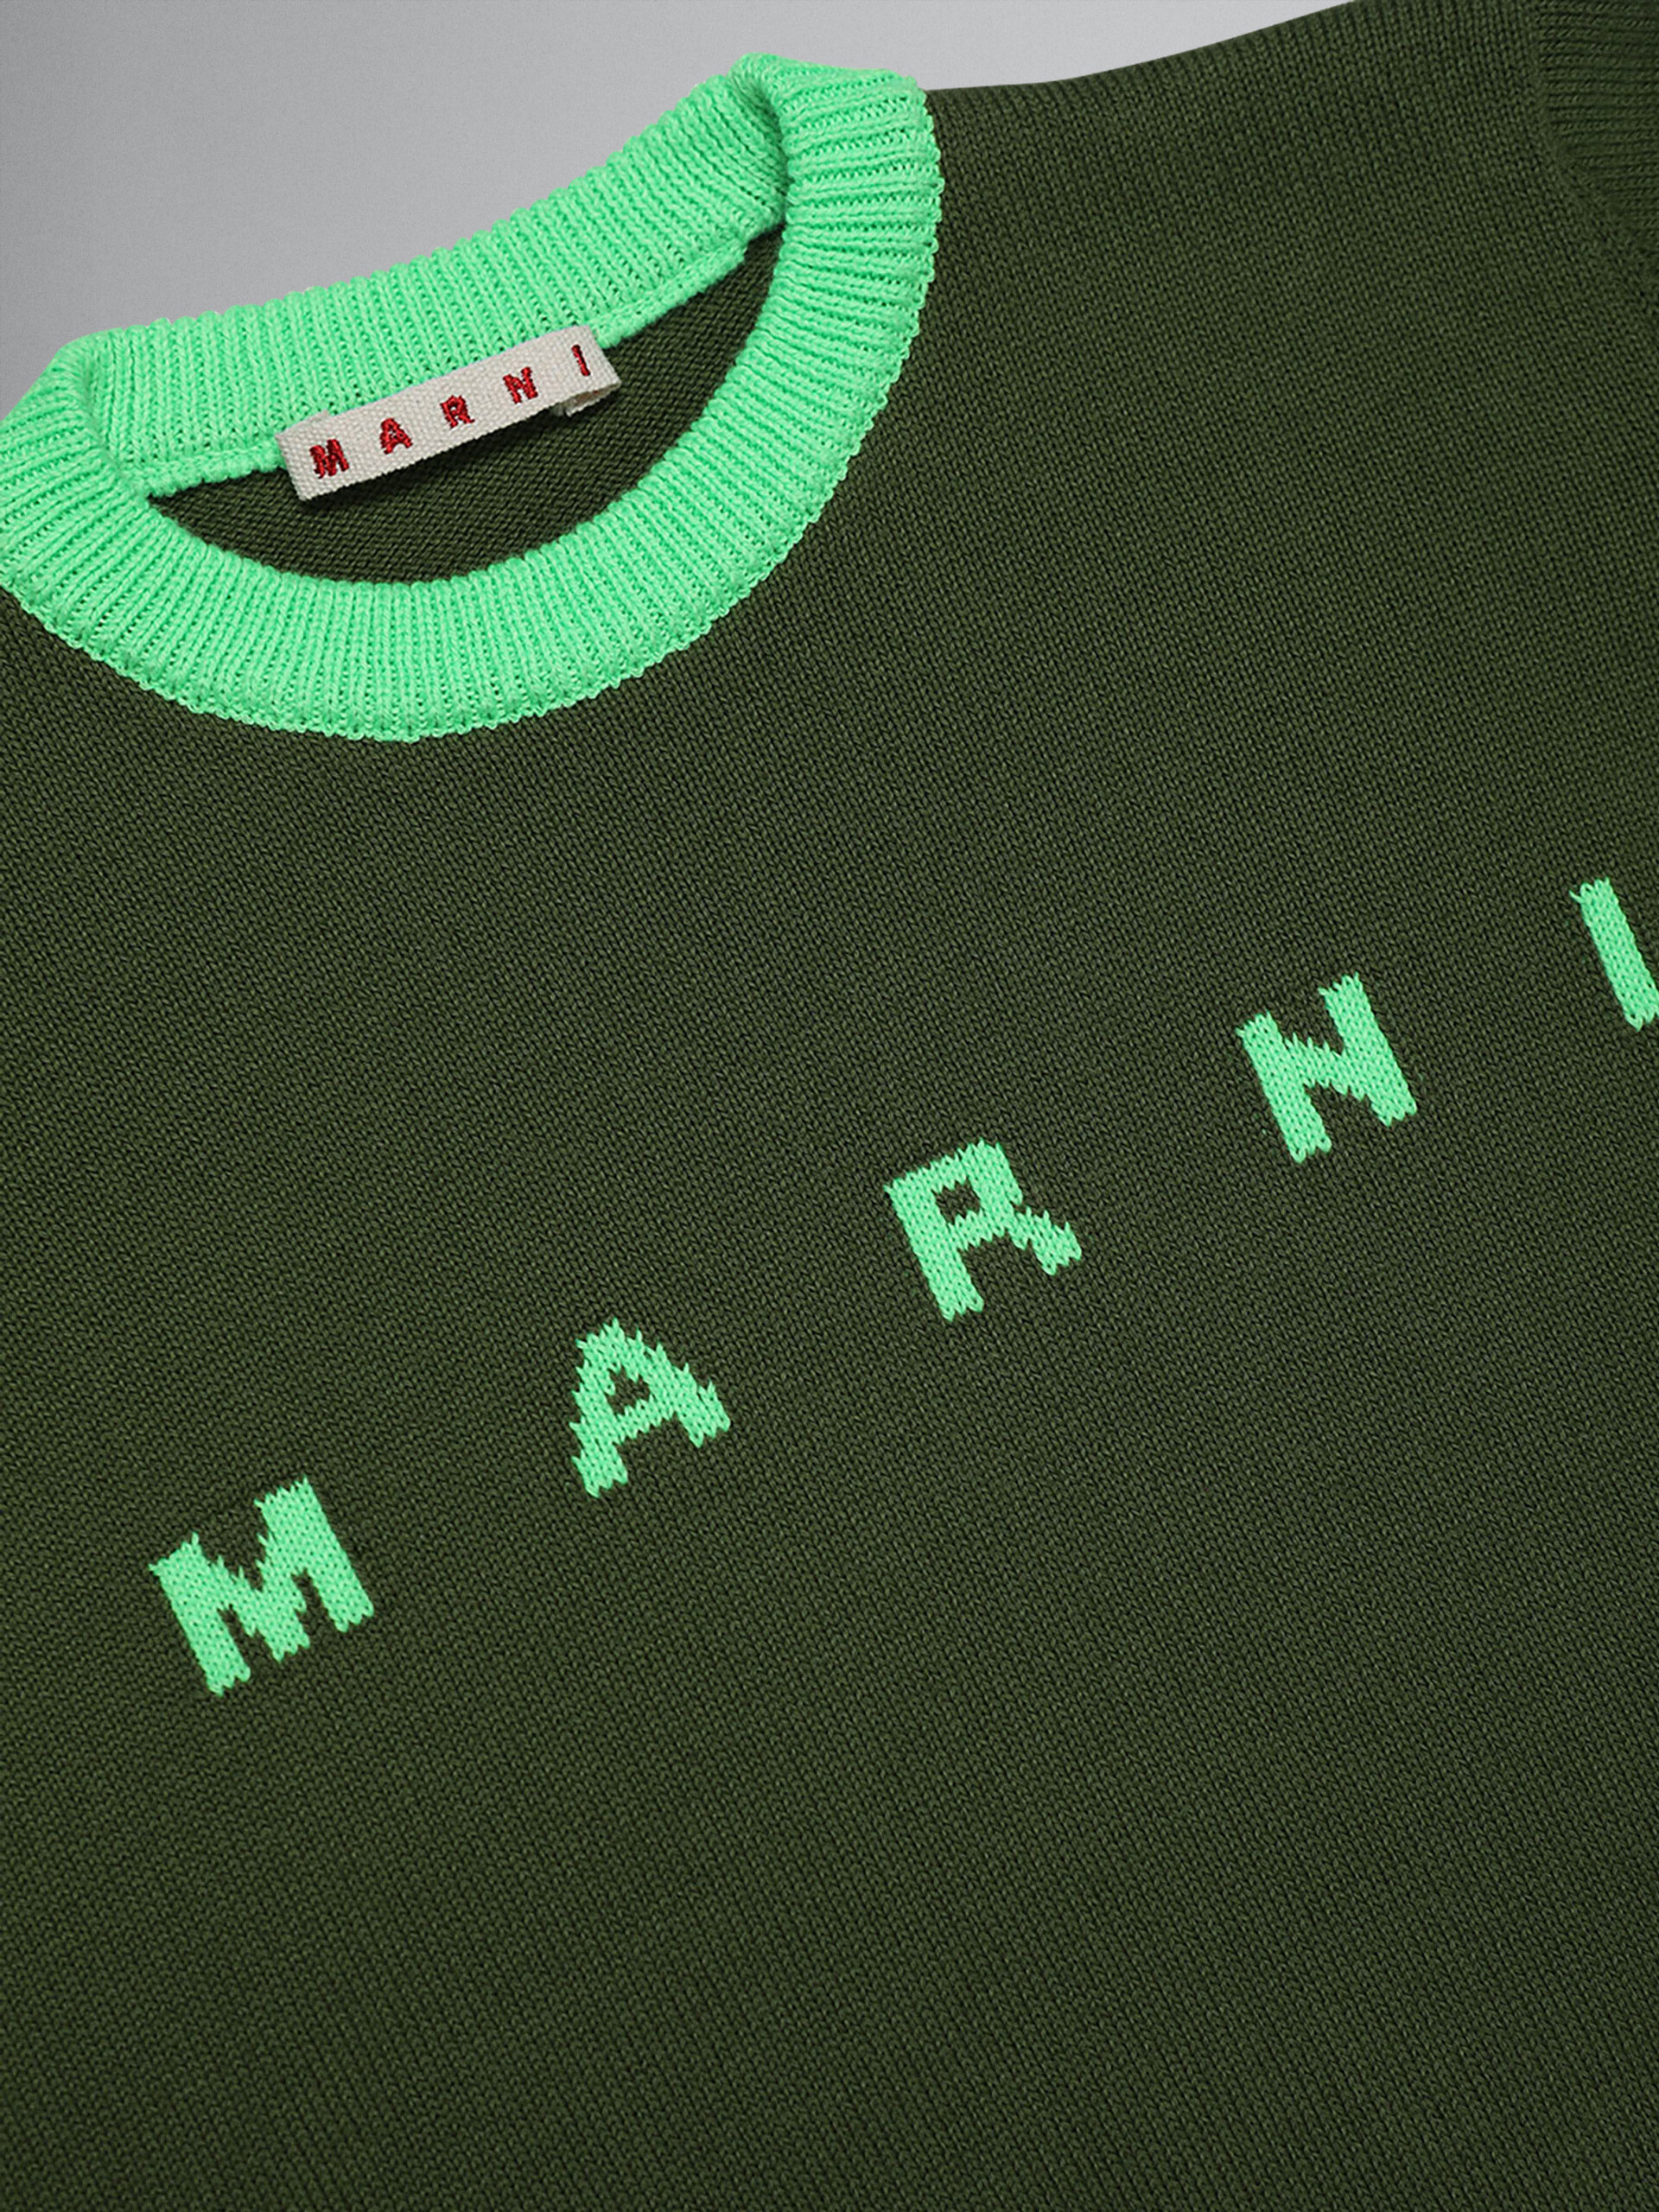 Sudadera algodón verde con logotipo - Prendas de punto - Image 3